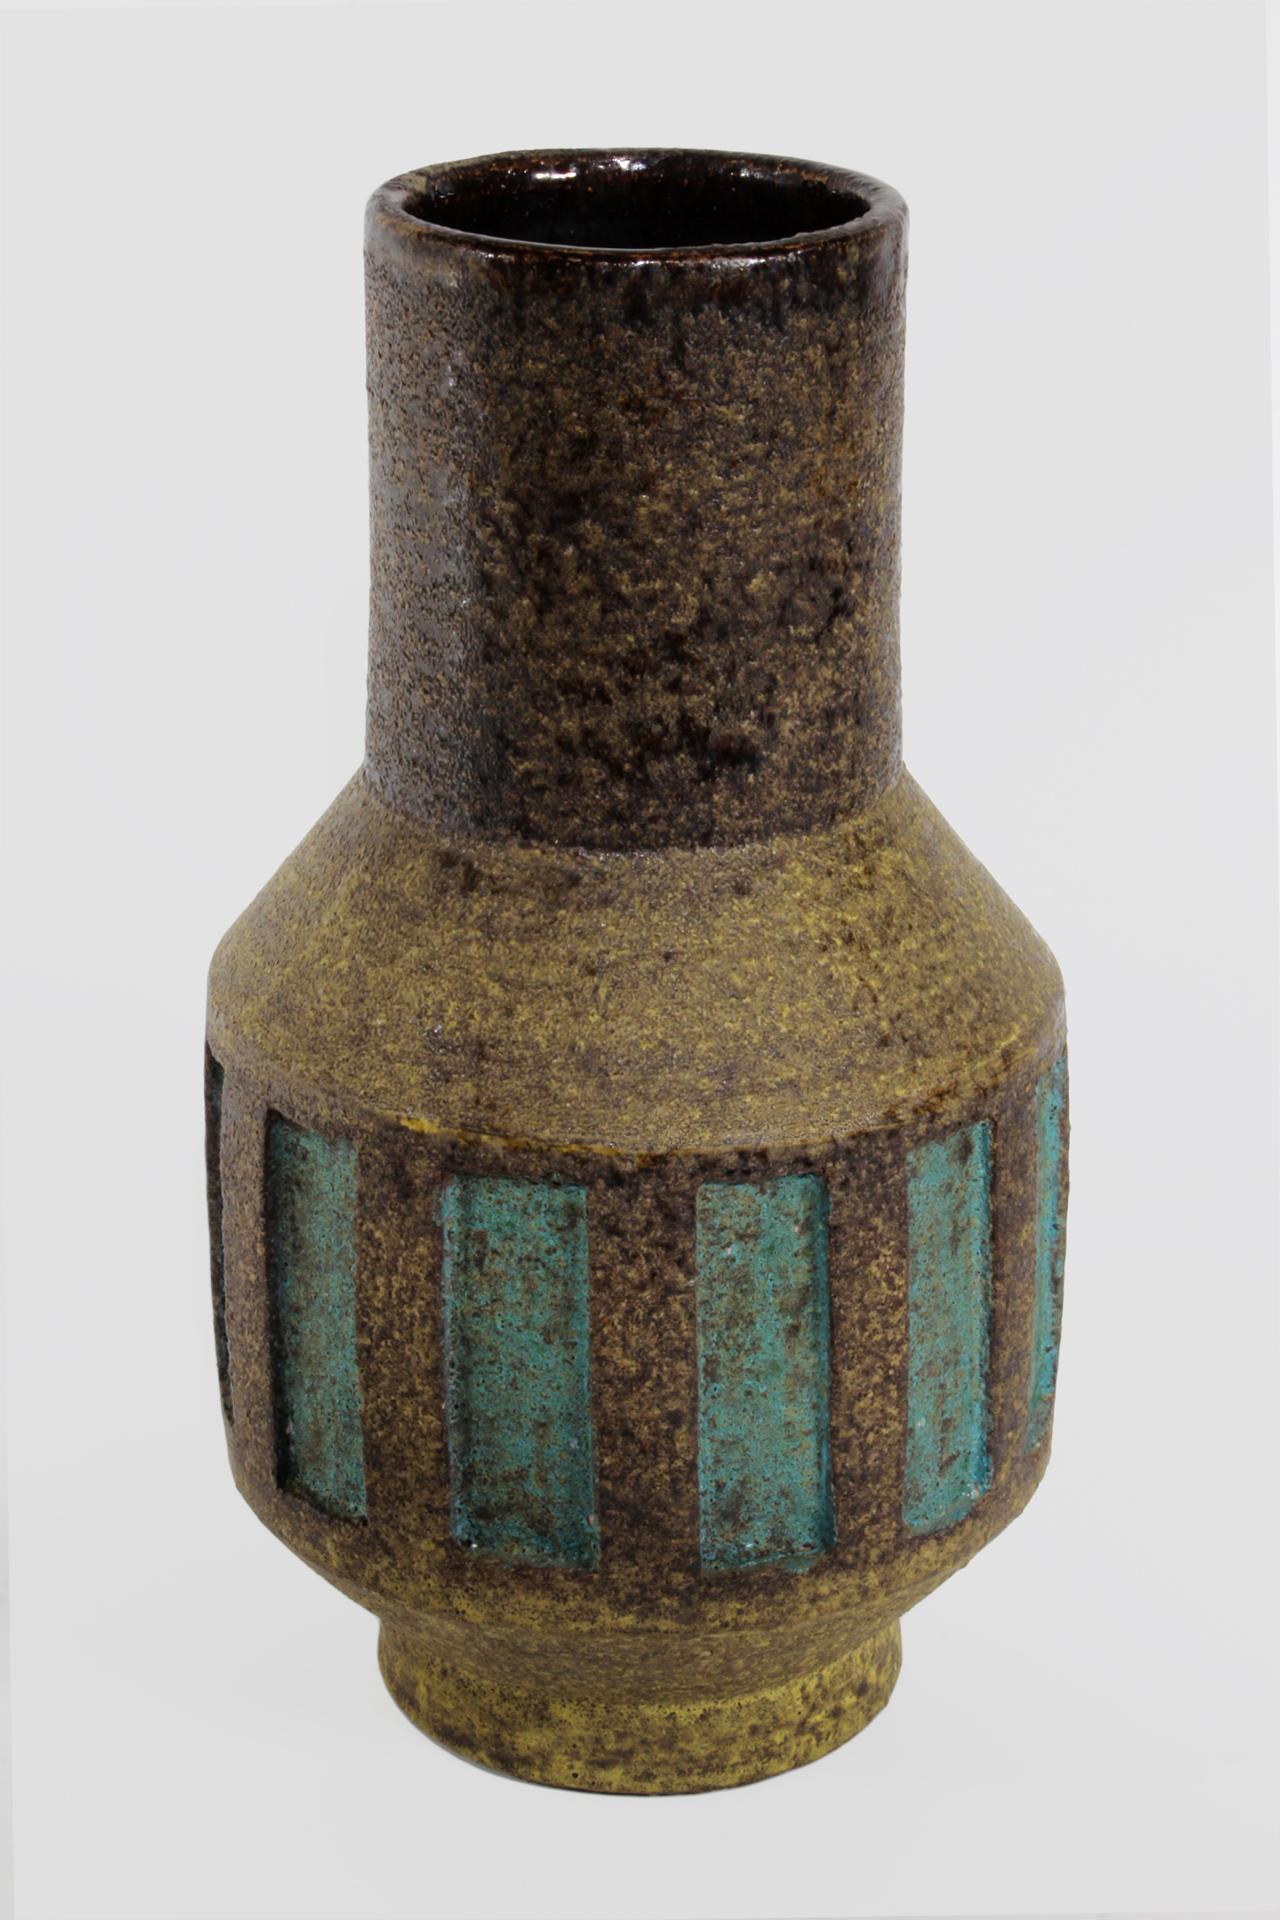 Handgedrehte Steinzeugvase des Keramikmeisters Aldo Londi für Bitossi, um 1950. Subtil in jedem Detail, von der stark strukturierten Oberfläche des Tonkörpers über eine wechselnde Oxidfärbung von Braun, Gelb und Schwarz bis hin zu den sanft